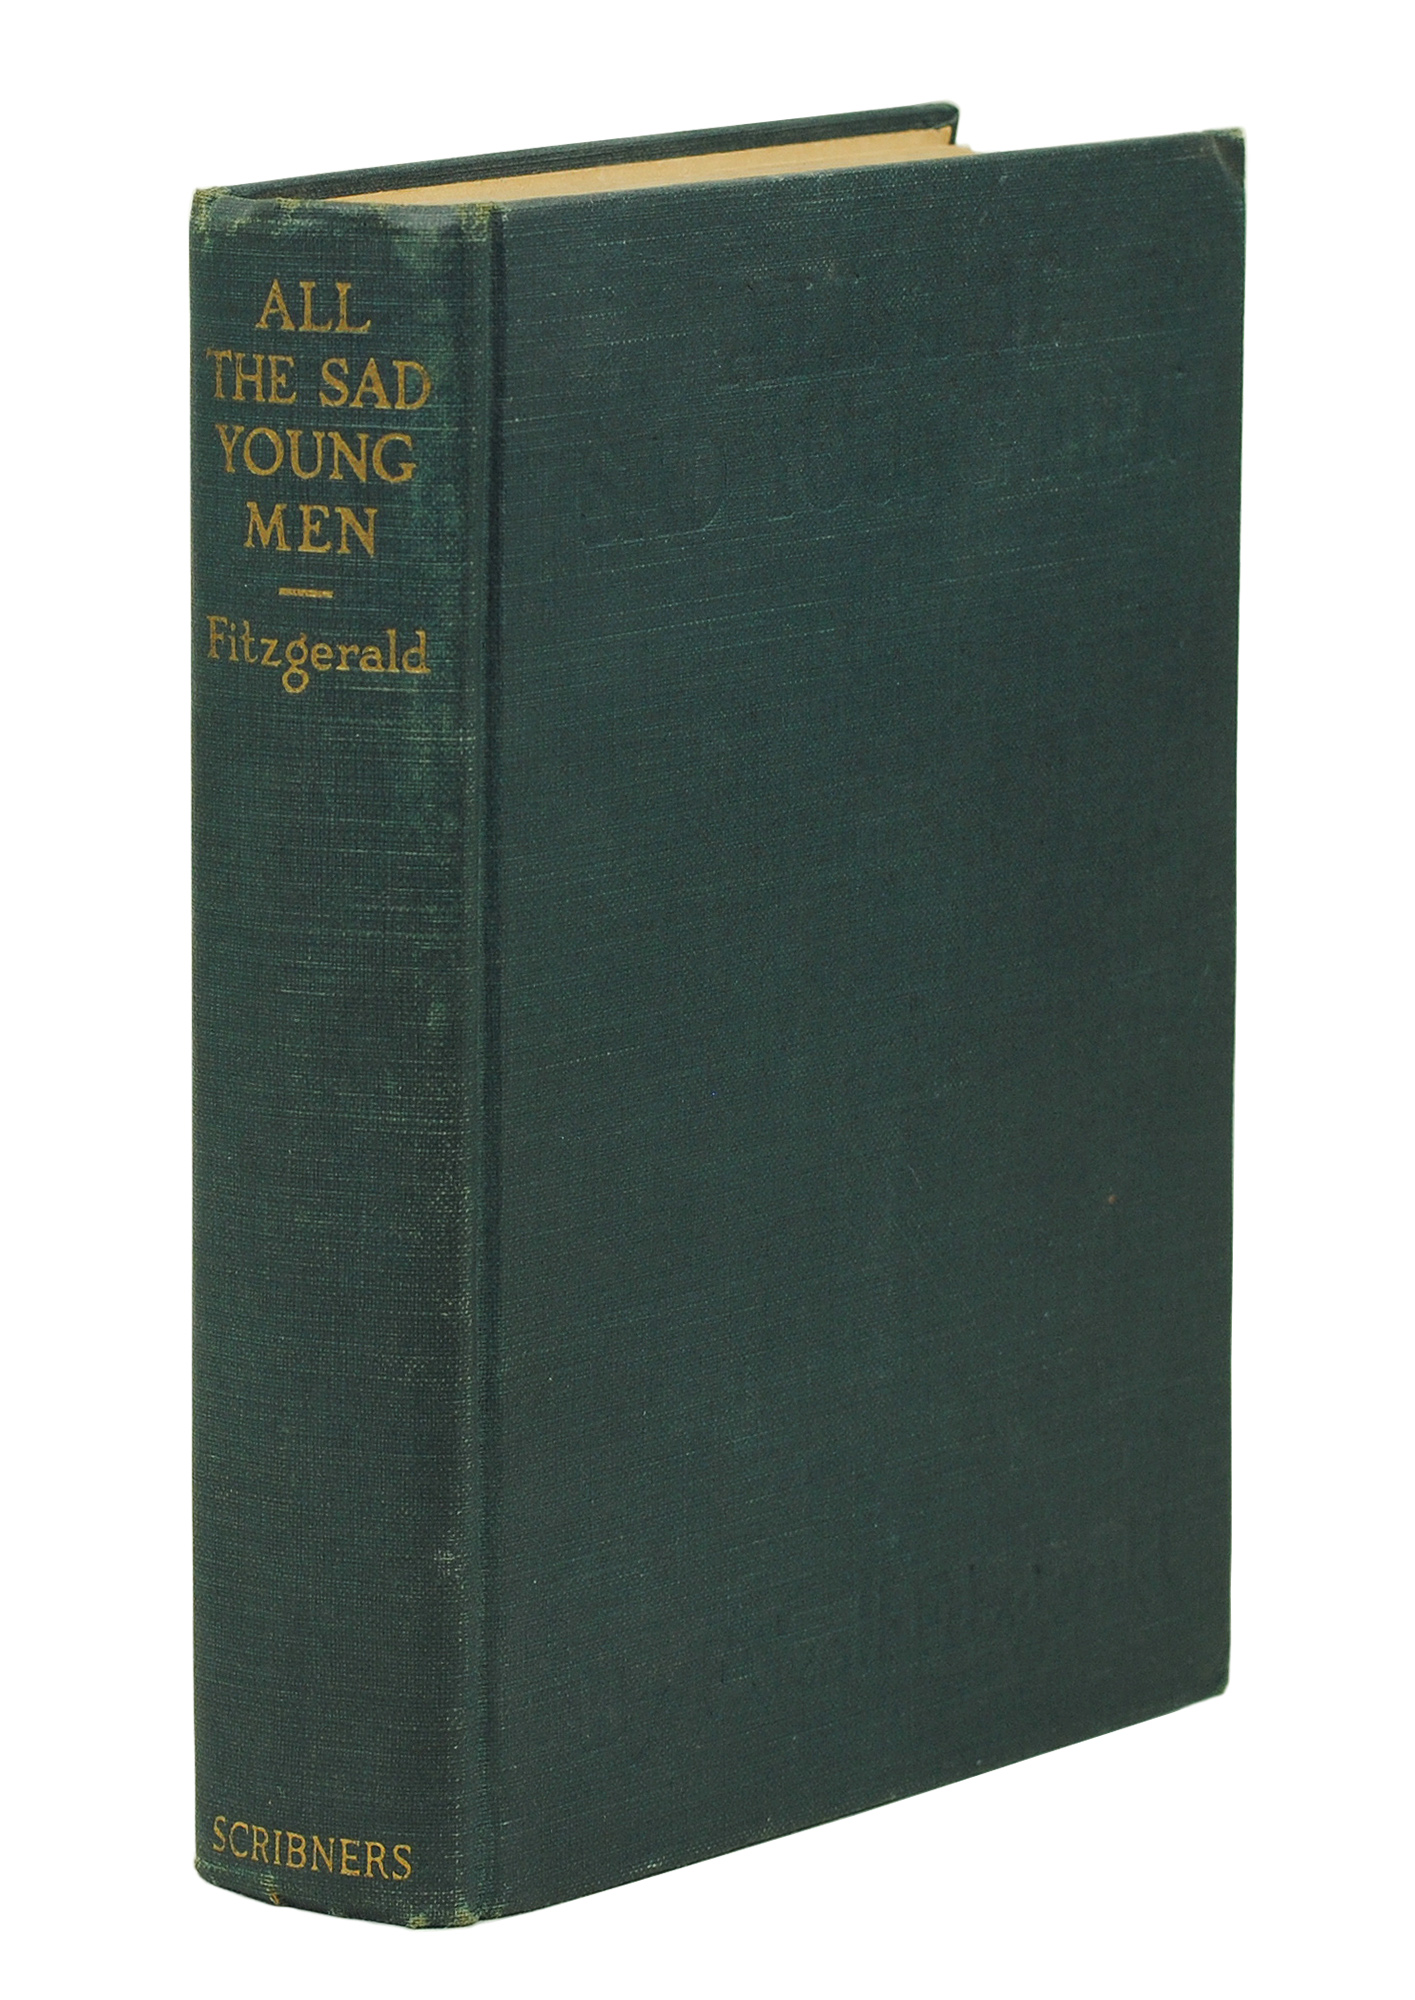 All the Sad Young Men. - Fitzgerald, F. Scott.